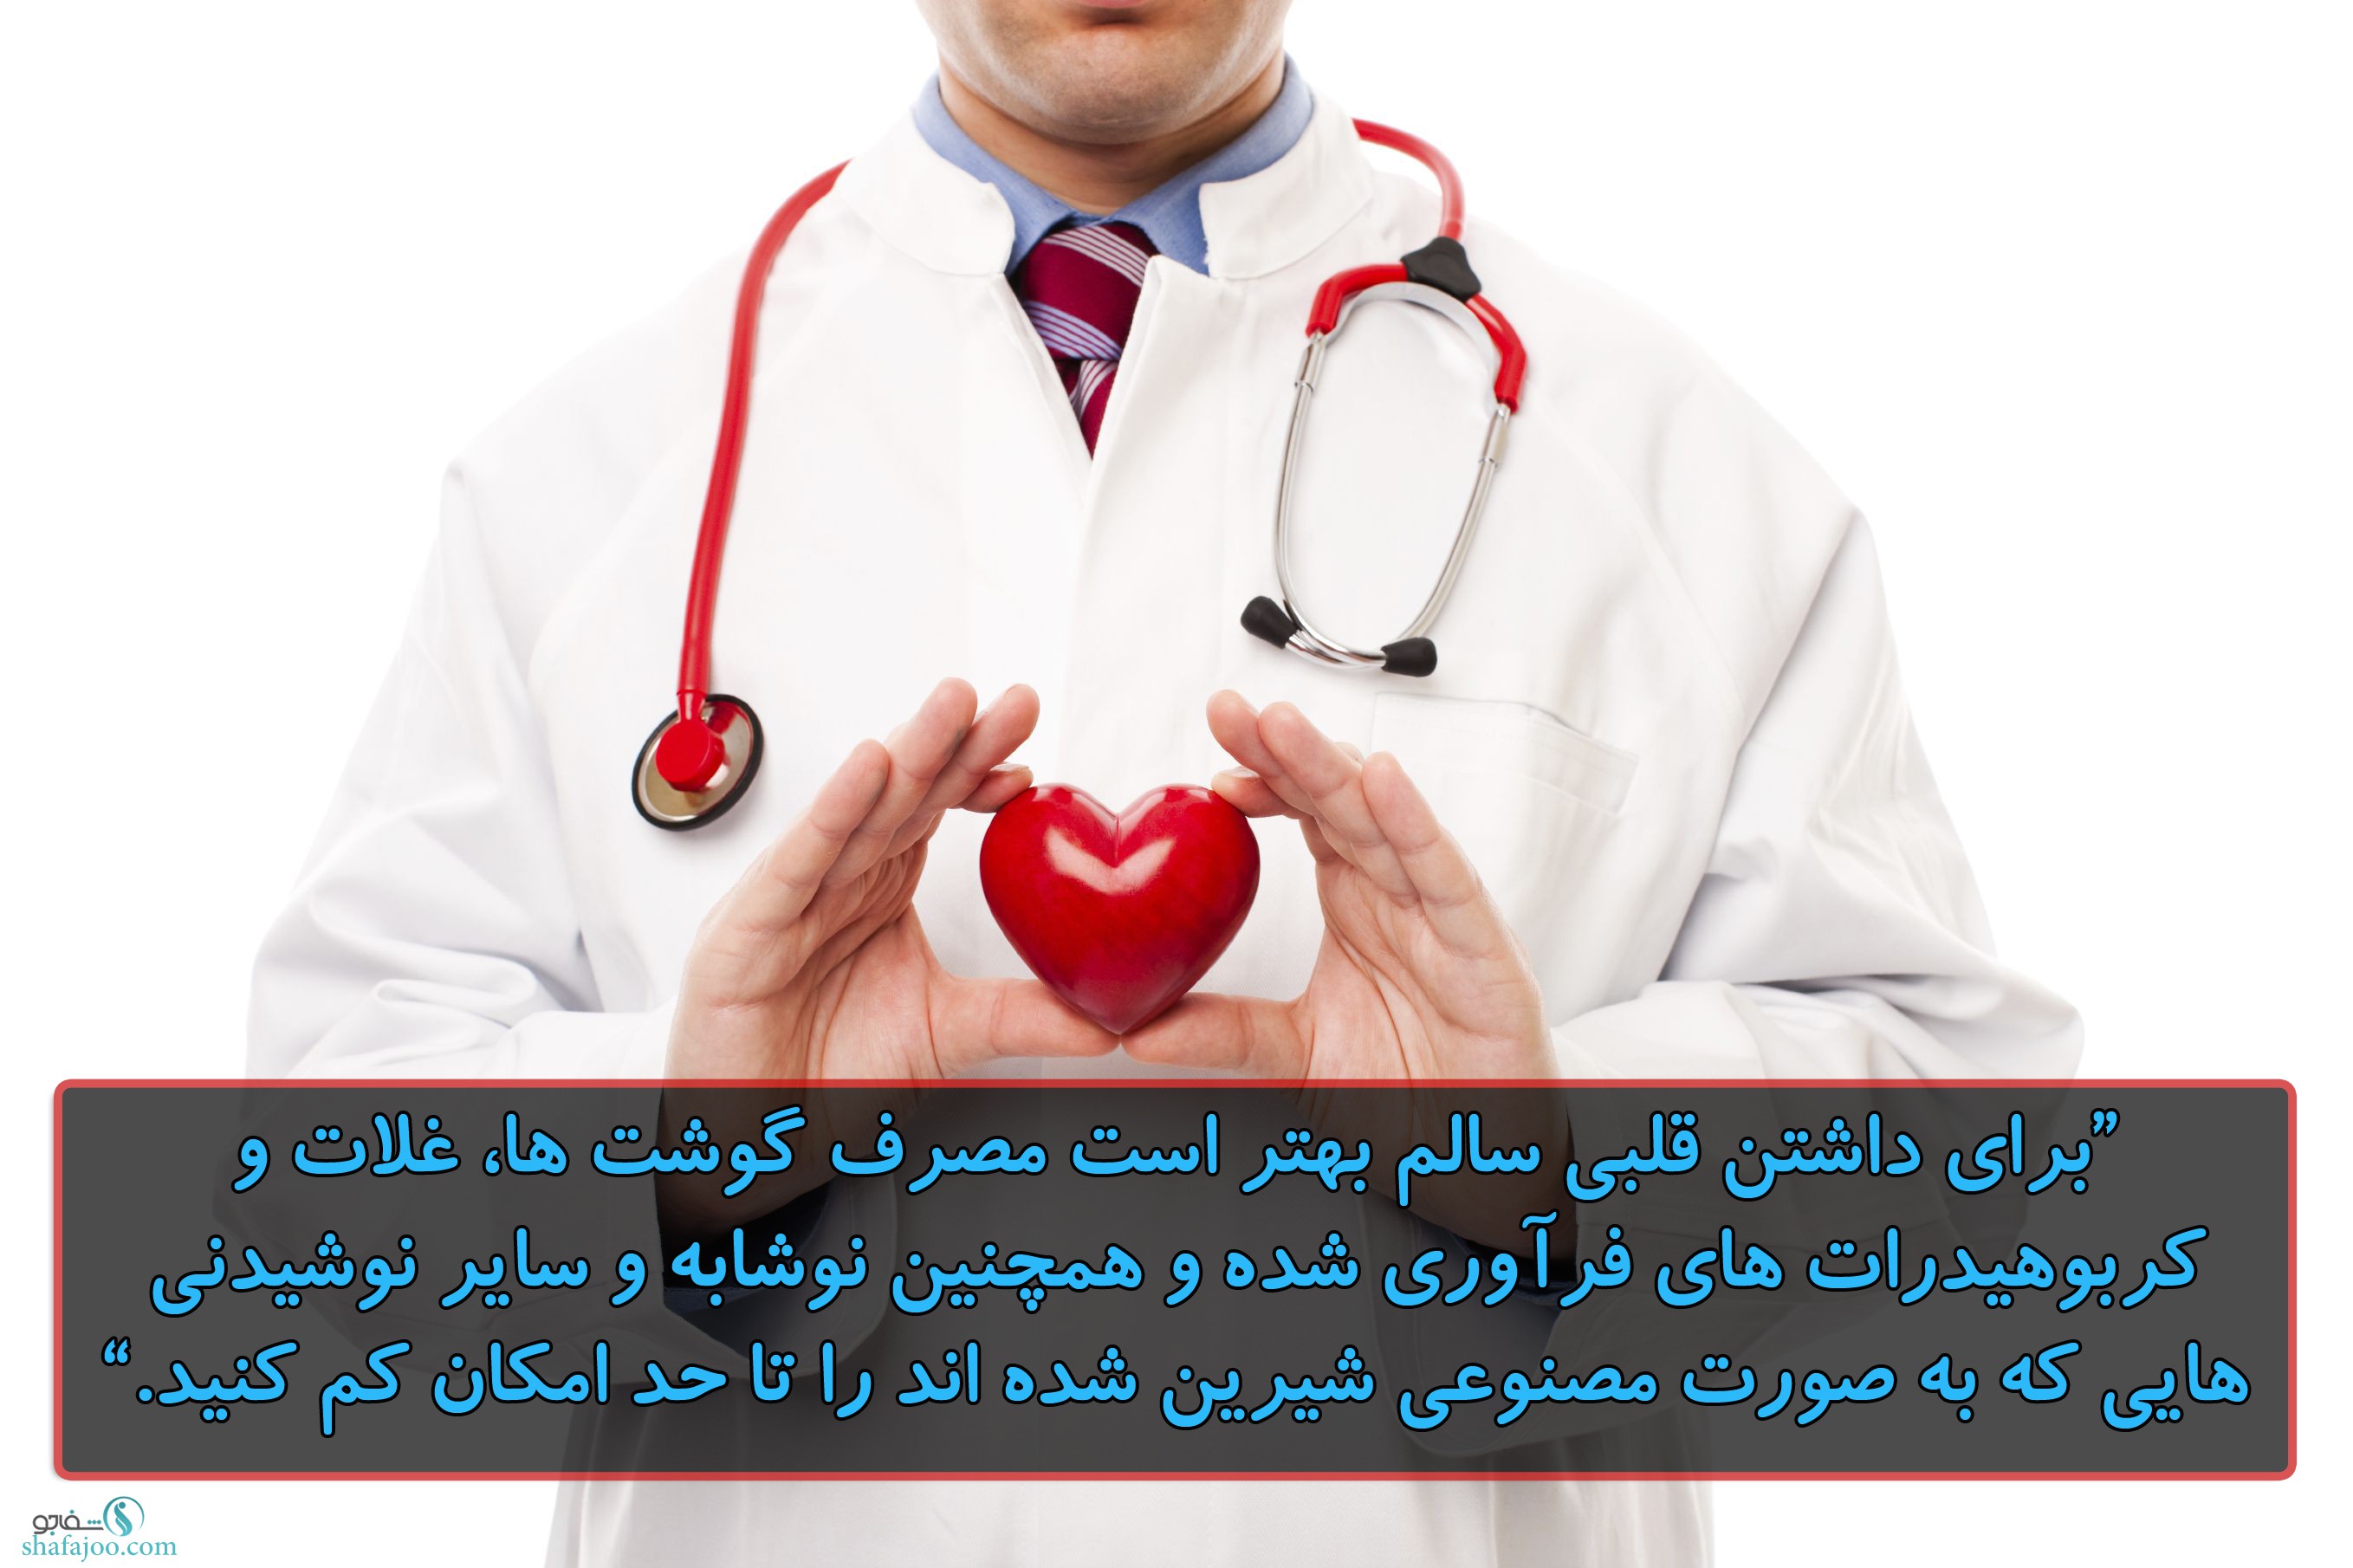 قلب سالم با کاهش استفاده از محصولاتی که به صورت مصنوعی شیرین شده اند